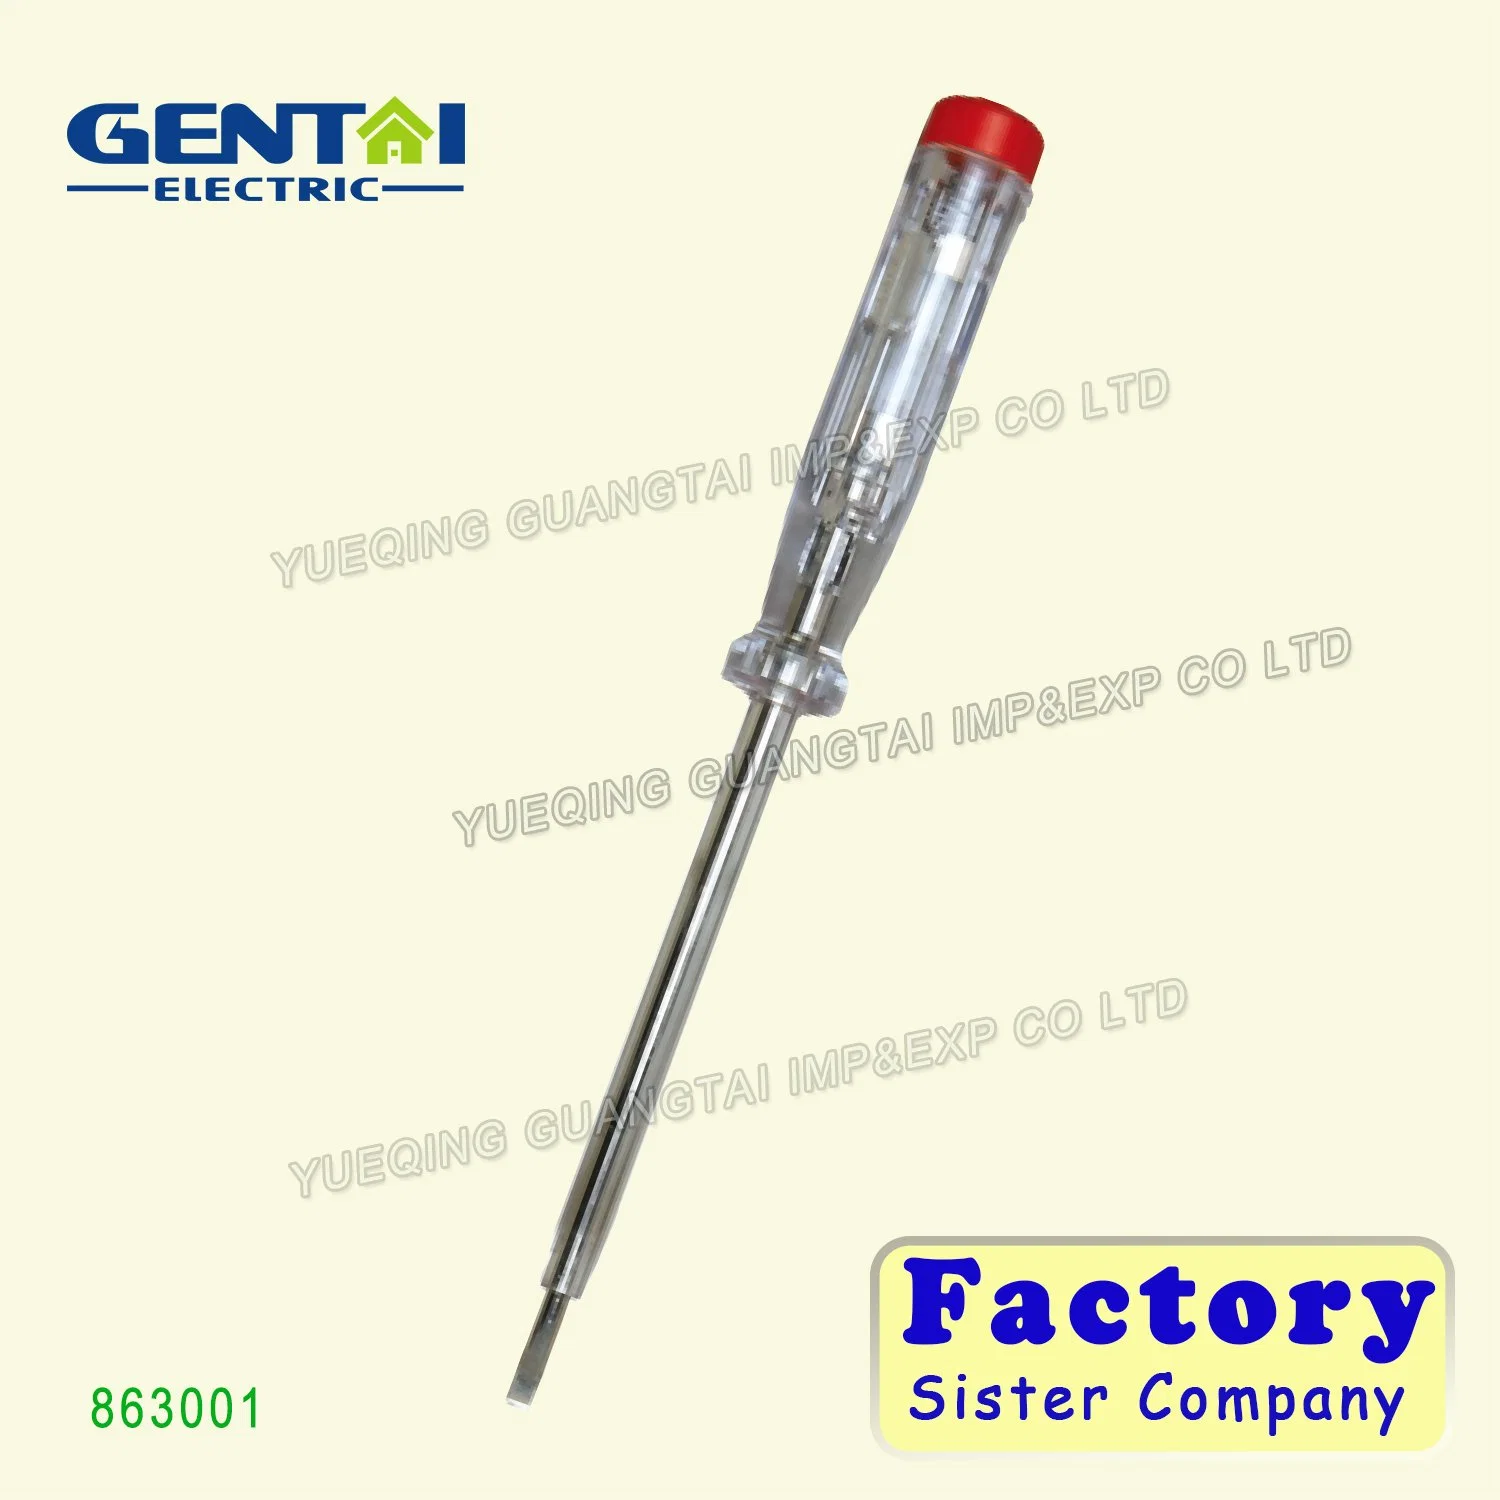 China Herstellung Lange Lebensdauer Spannung Elektrischer Stift Schraubendreher Tester (853001)